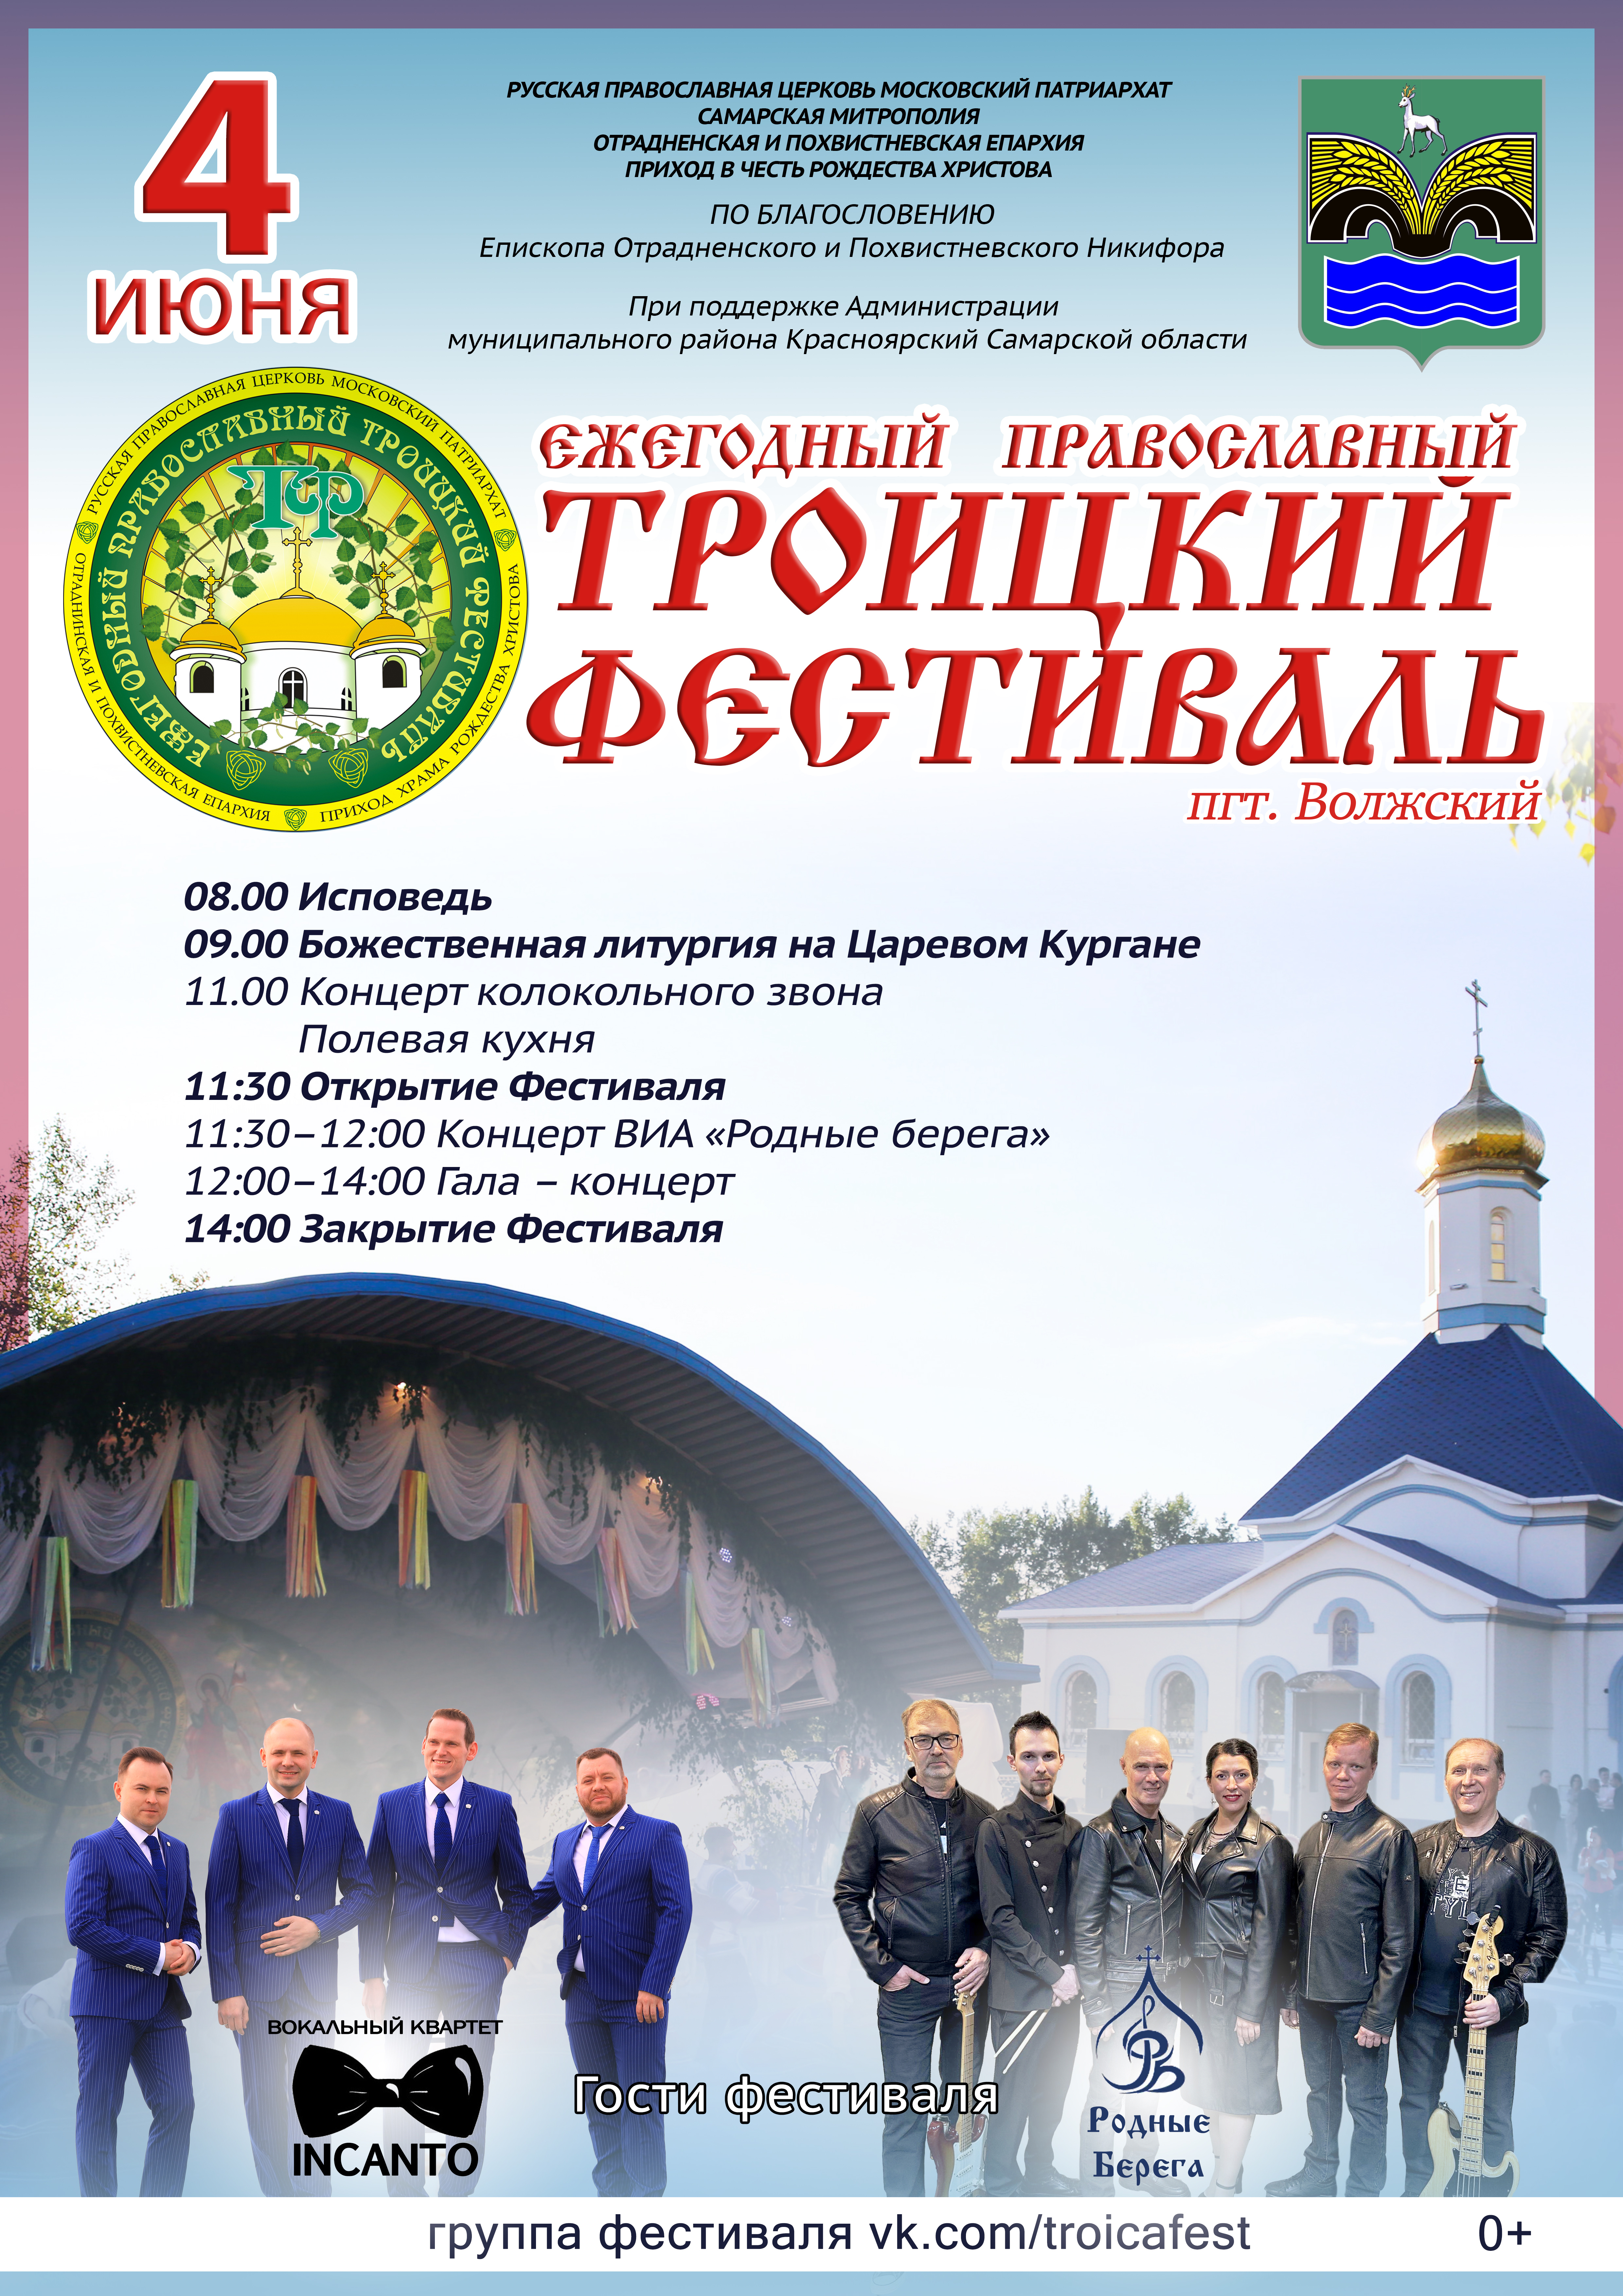 Ежегодный православный Троицкий Фестиваль